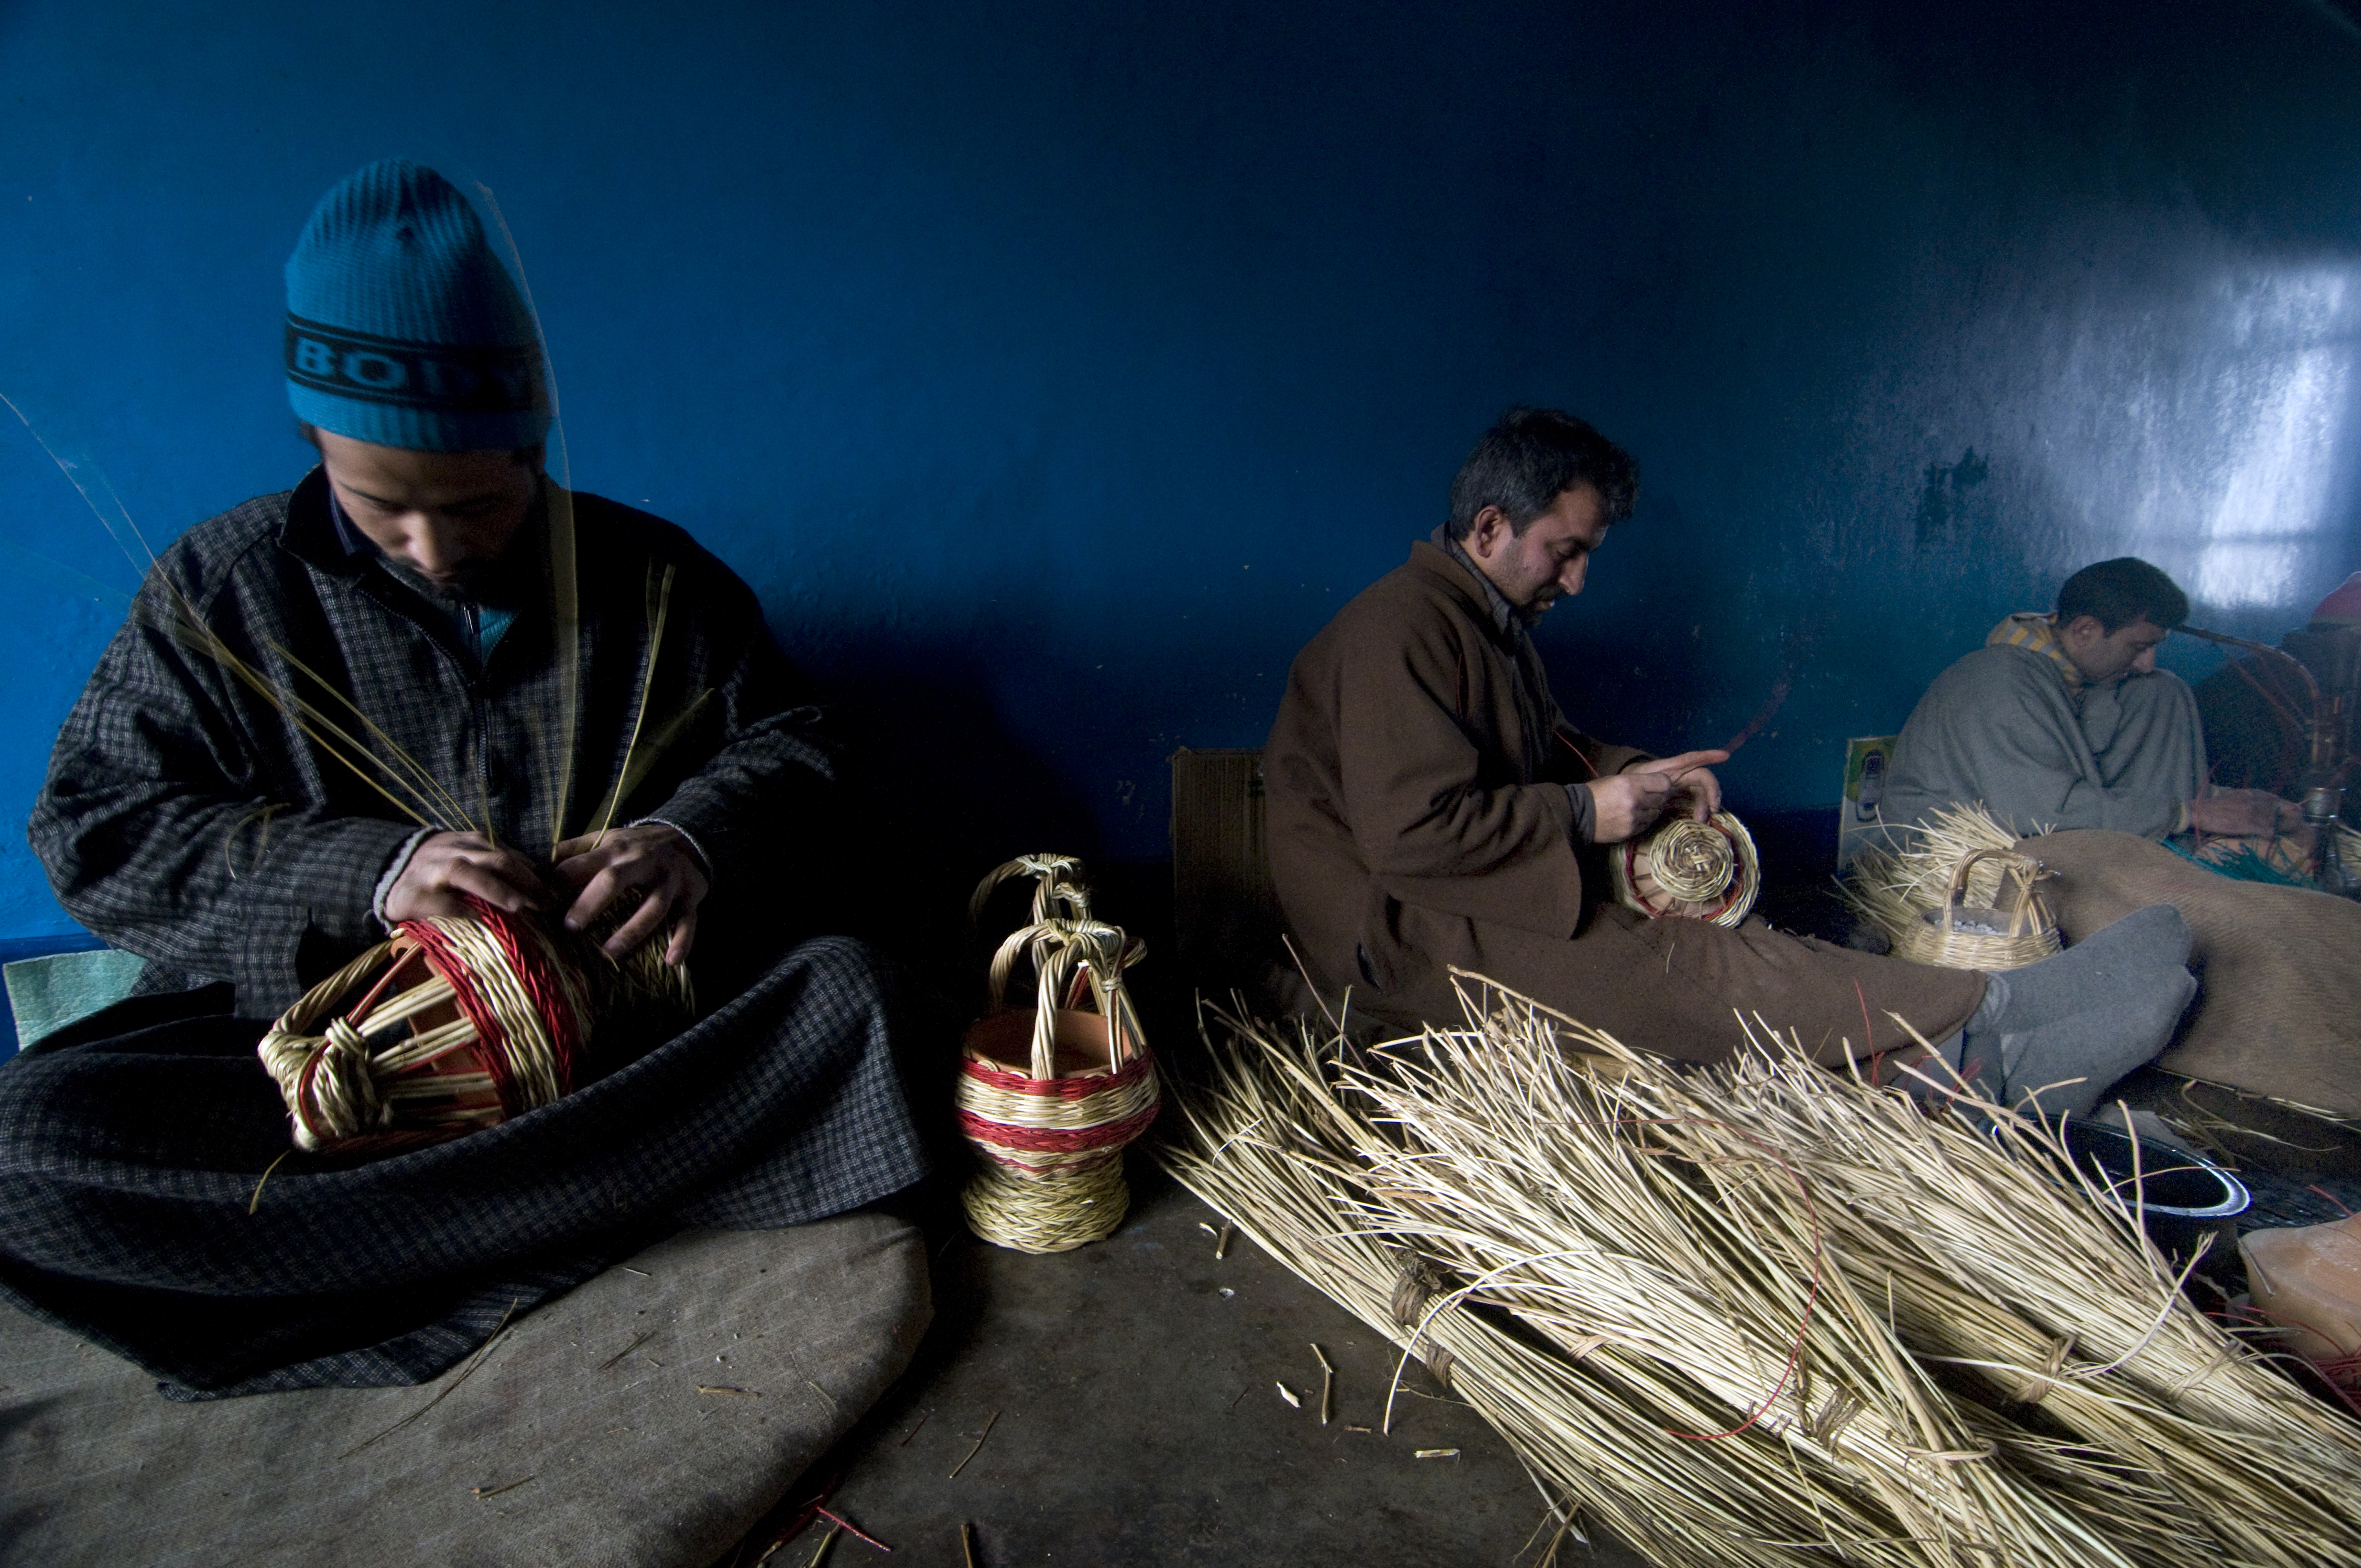 Artisans at work in a village kangdi factory (photo: Sugato Mukherjee)